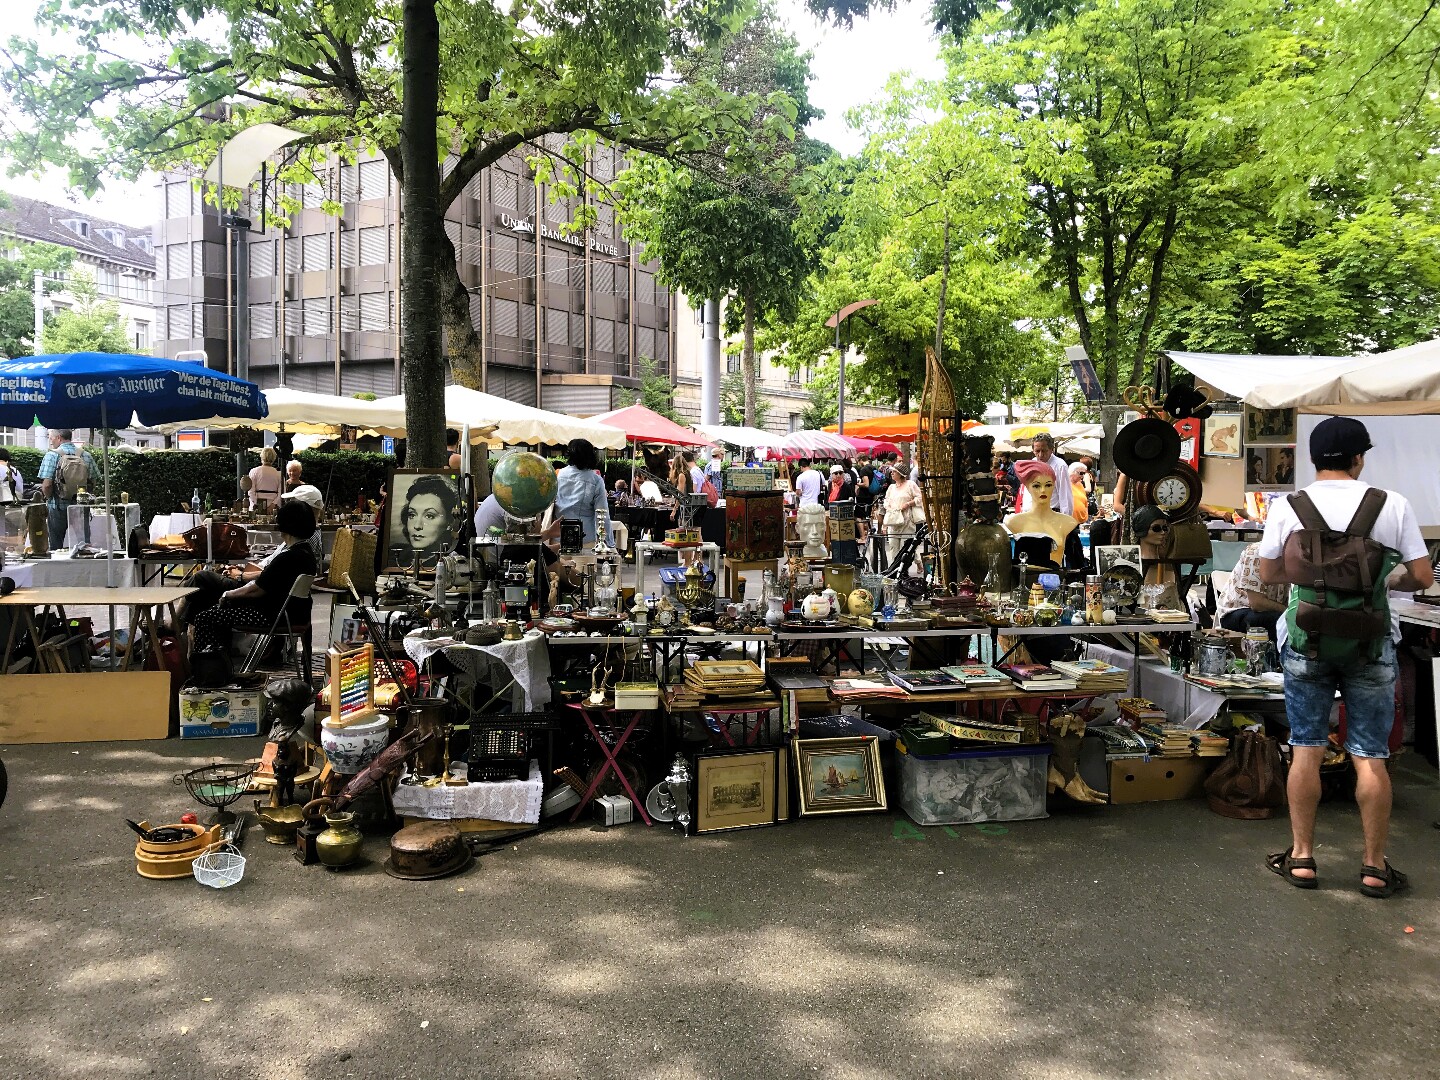 Берклиплац в Цюрихе - рынок со старыми вещами